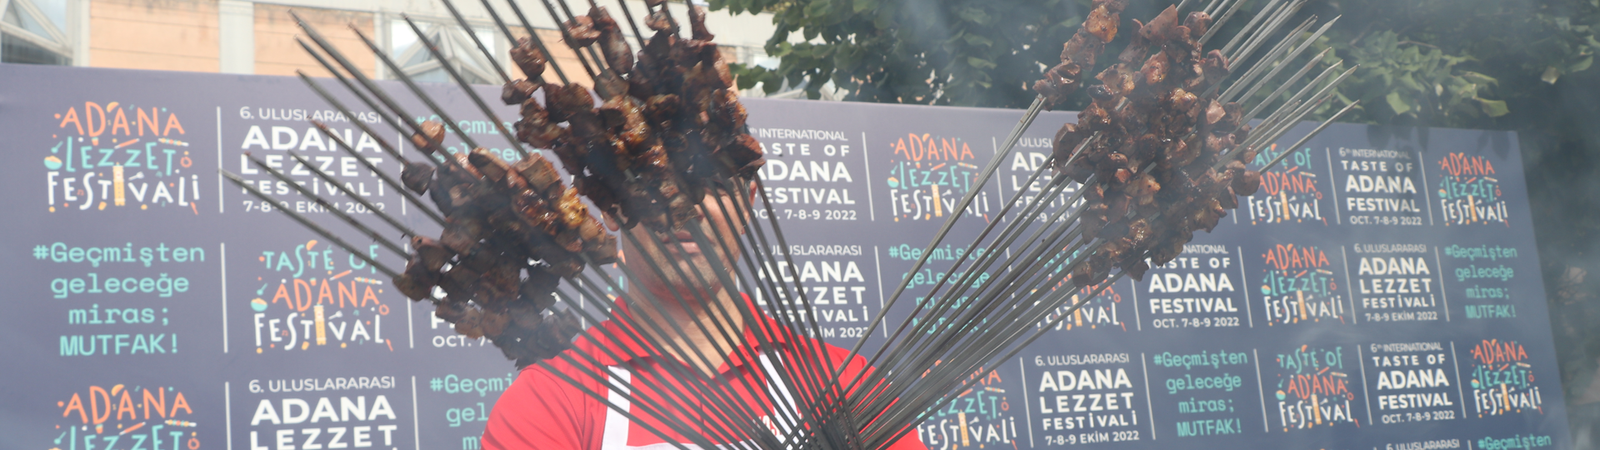 Uluslararası Adana Lezzet Festivali, İstanbul Feriye Basın Toplantısı 1